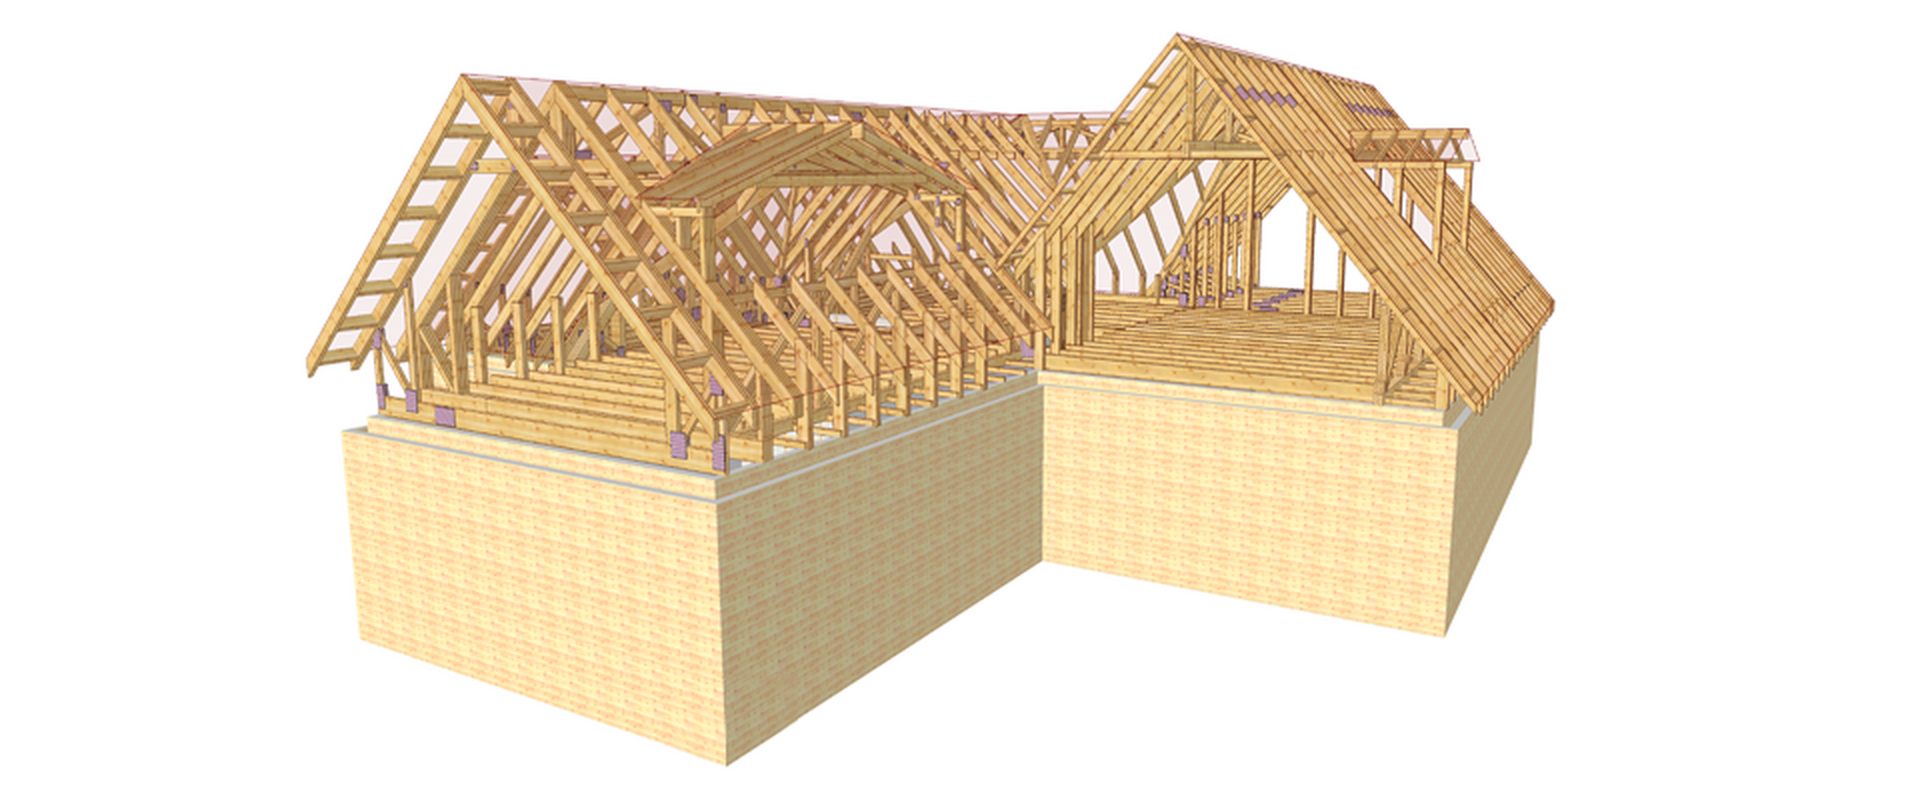 DSSI - roof truss diagram designed in CAD